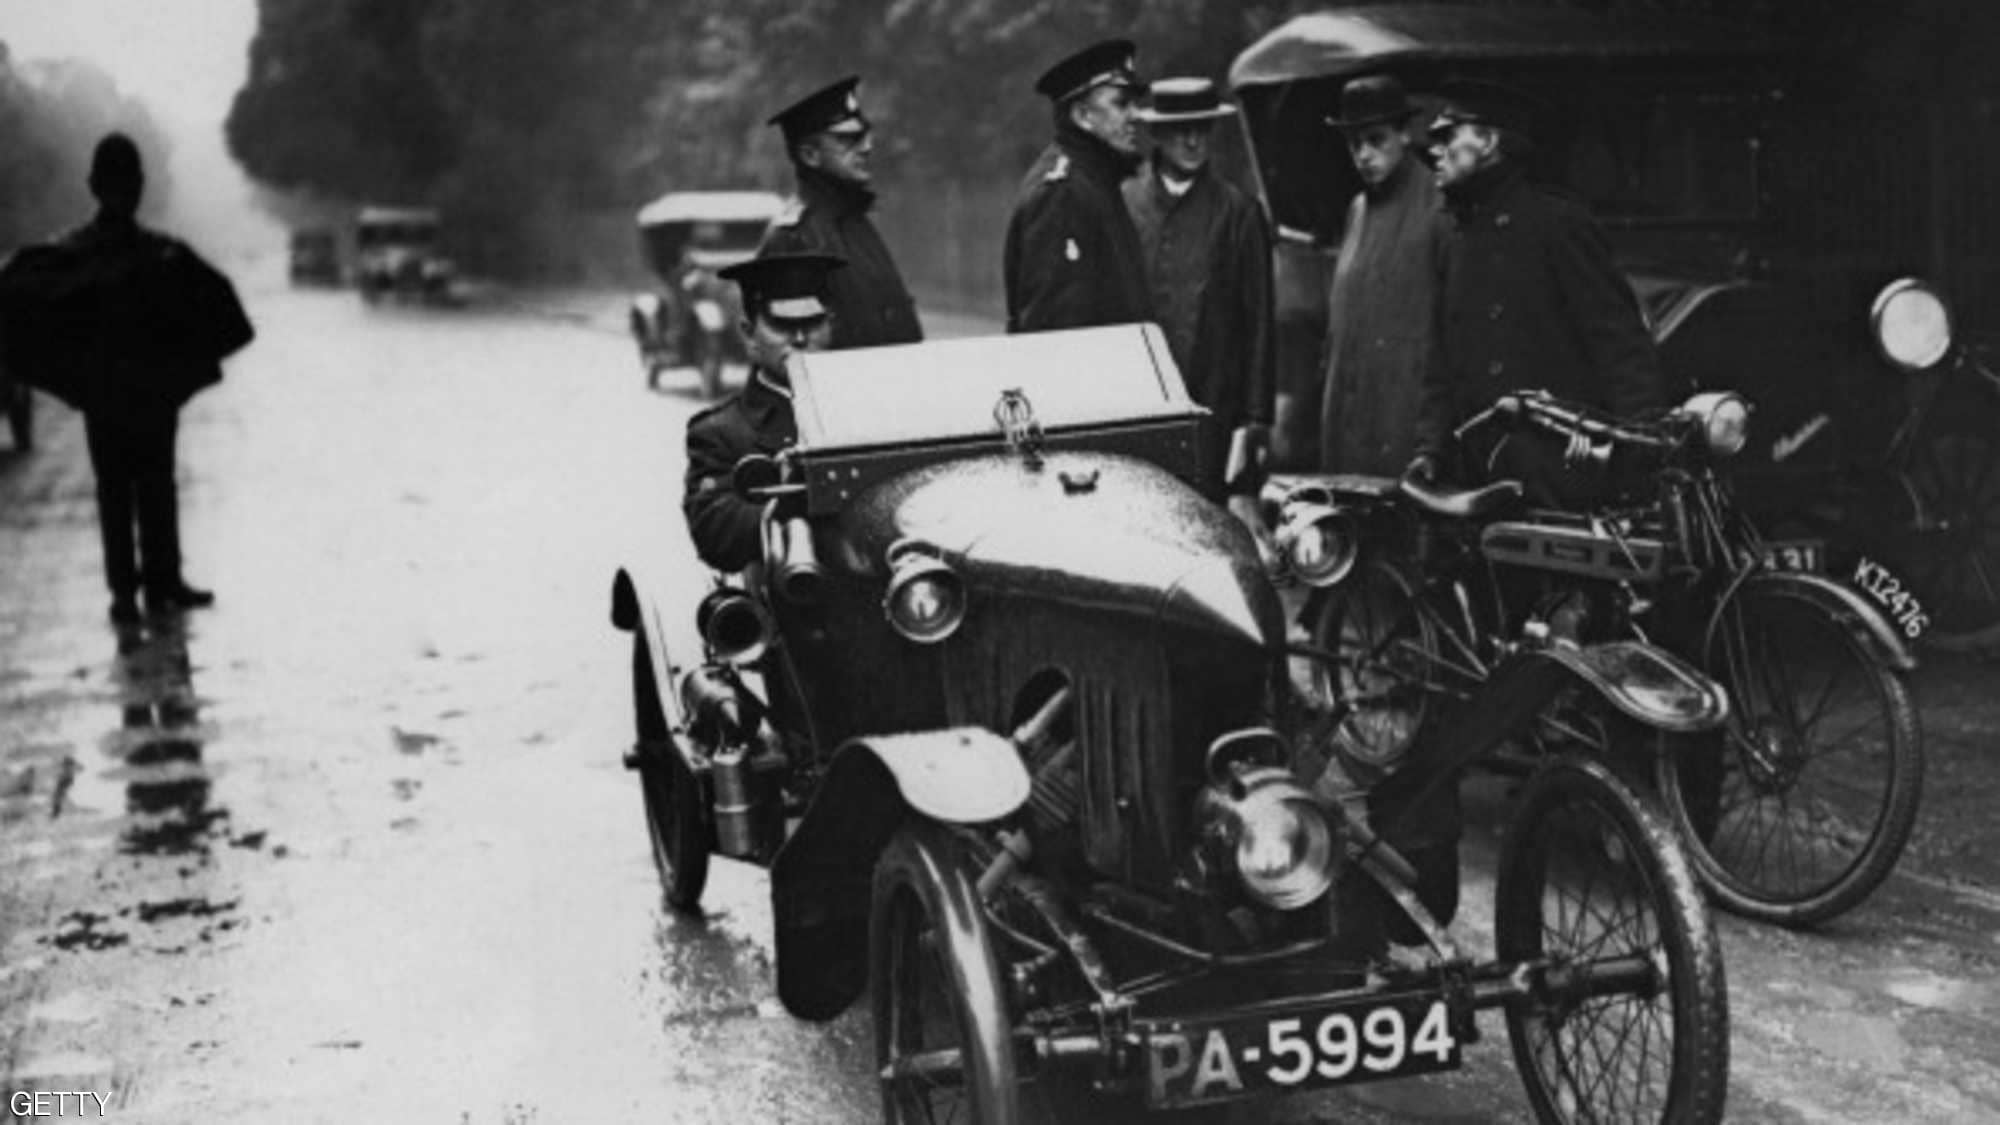 "بالصور" هذا ما بدت عليه السيارات قبل 100 عام من الآن 5